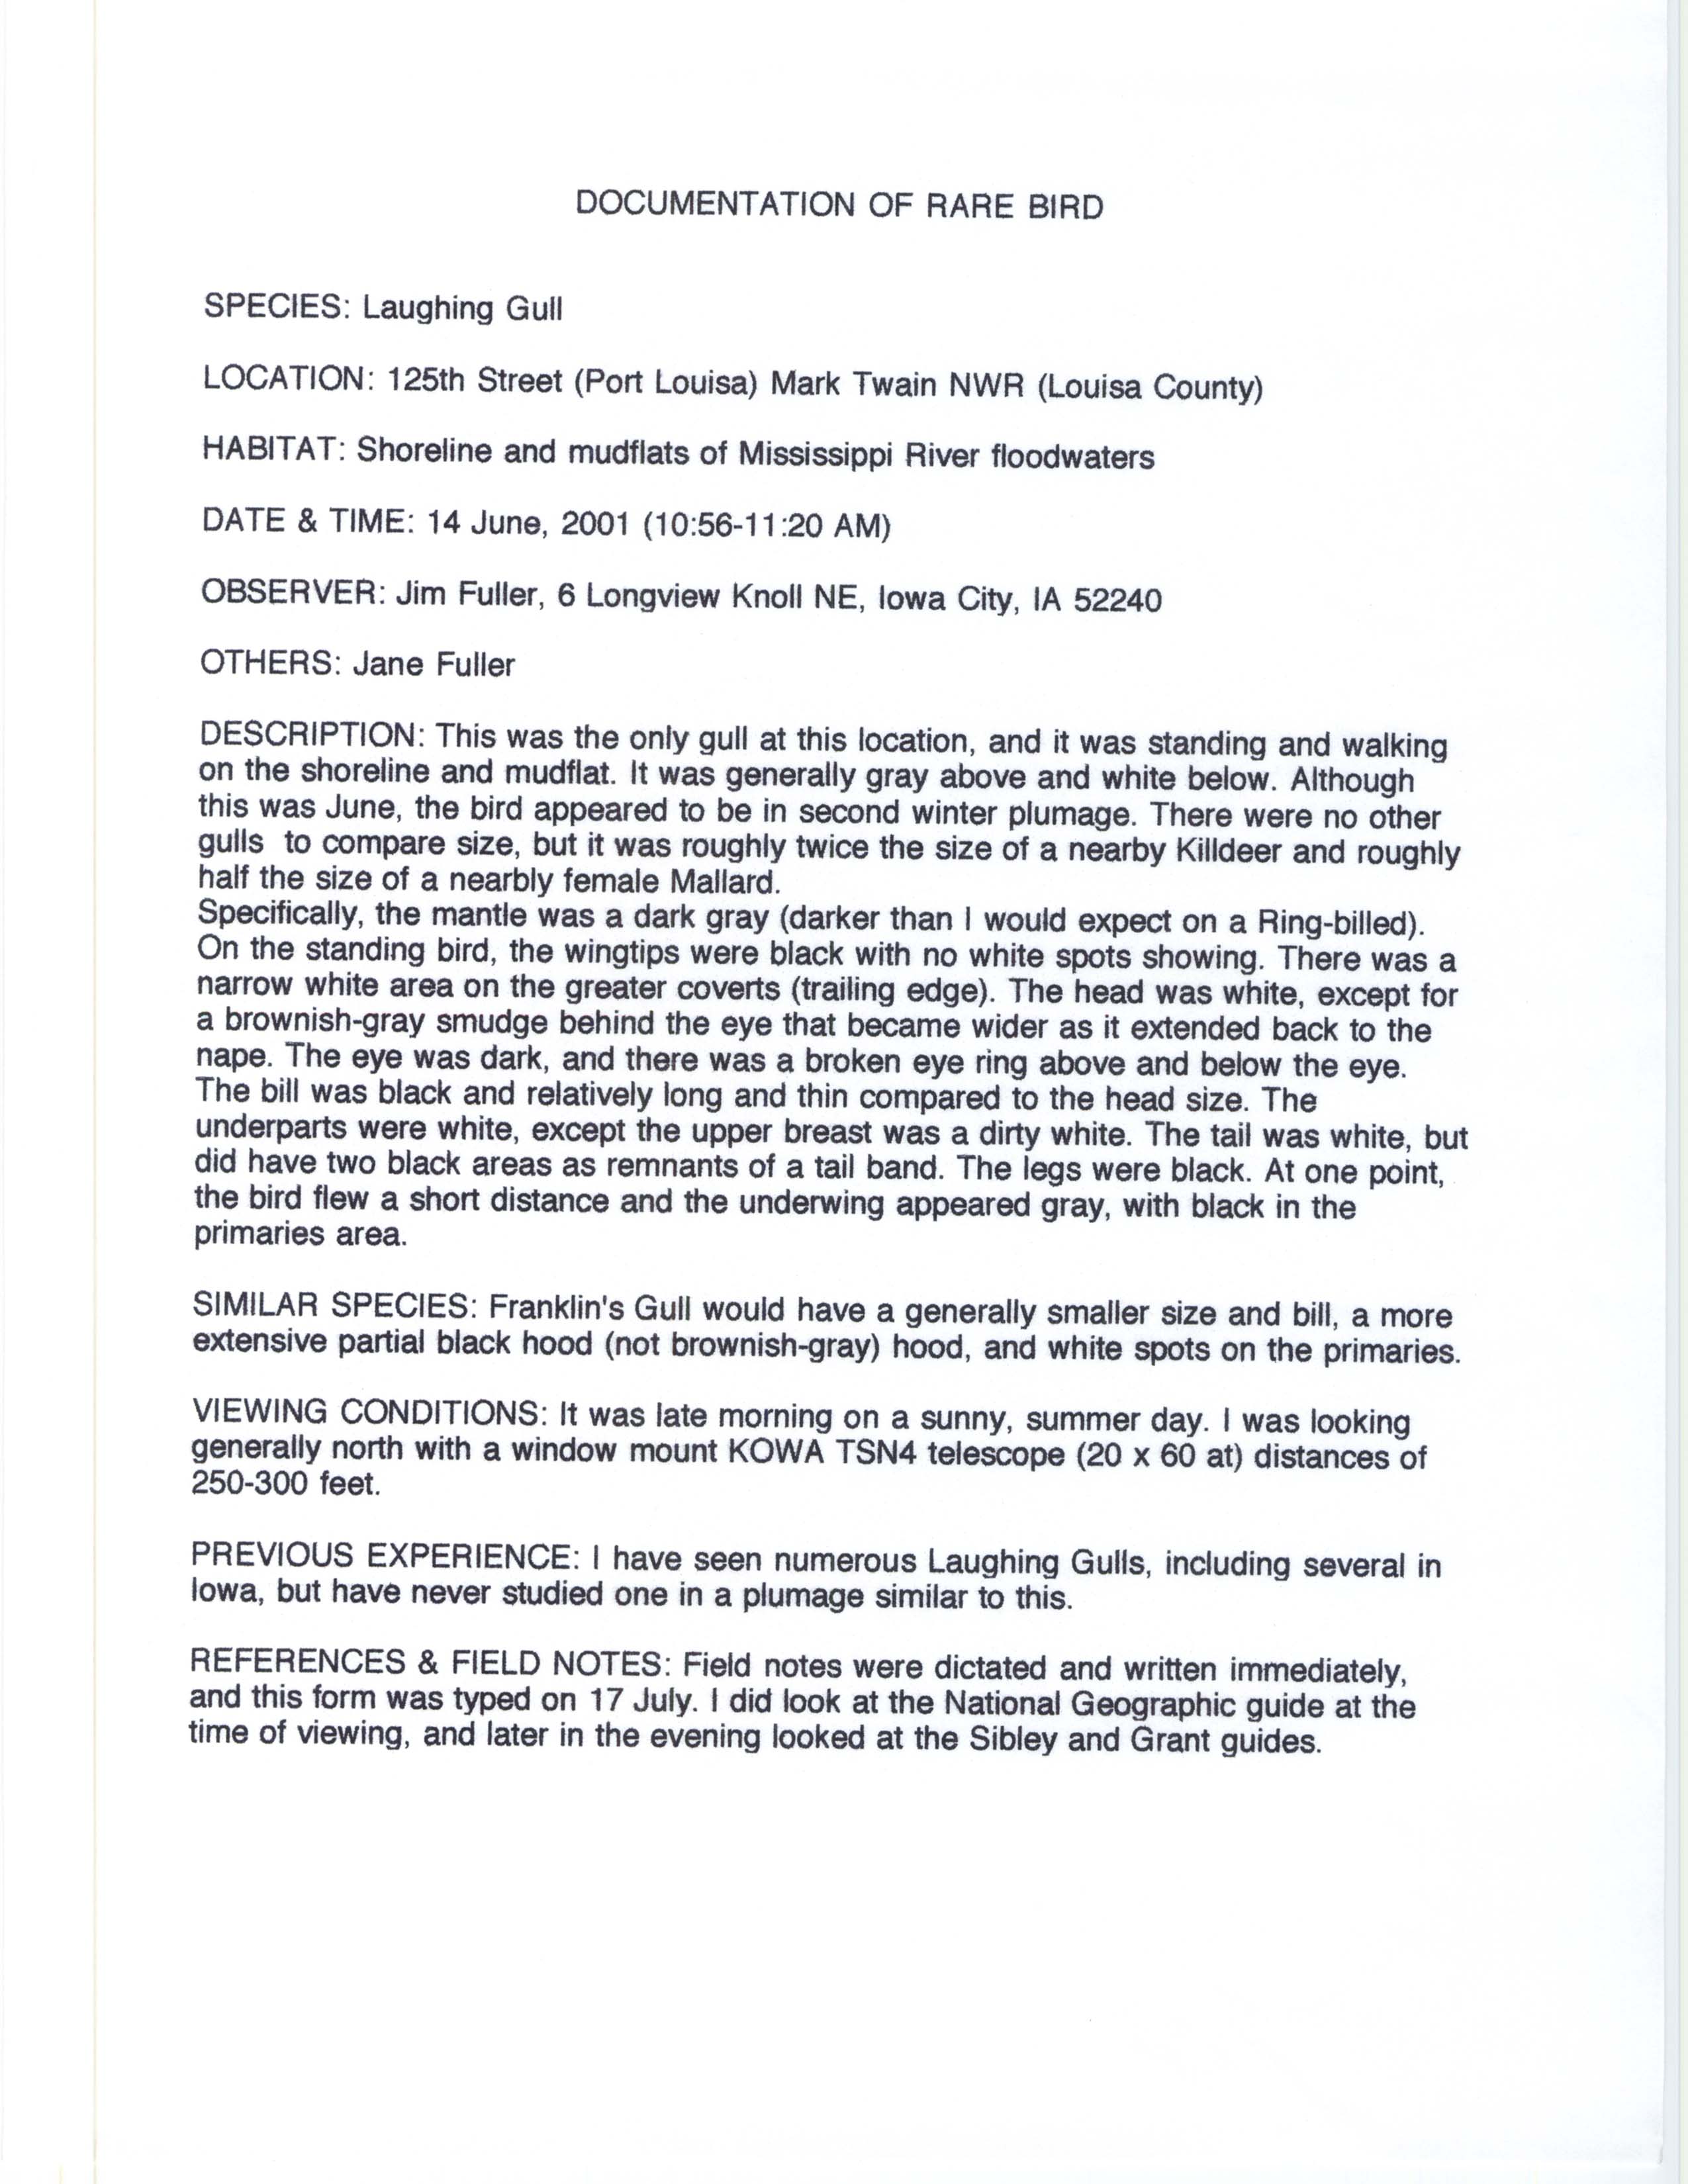 Documentation of rare bird, Laughing Gull, James L. Fuller, June 14, 2001